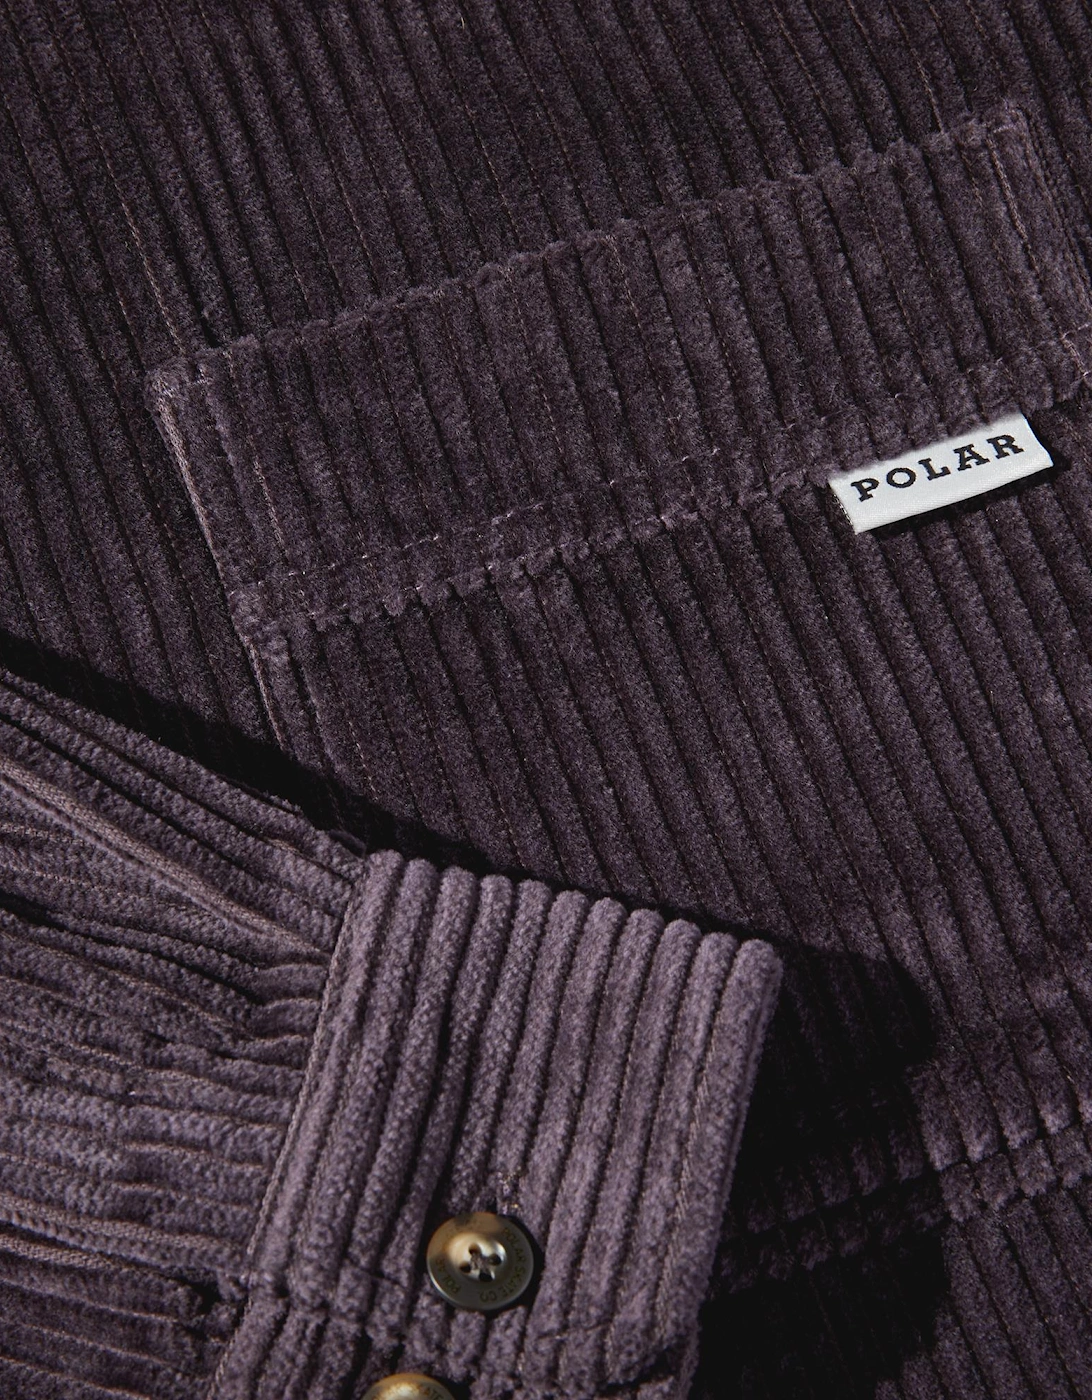 Polar Skate Co. Cord Shirt - Dark Violet